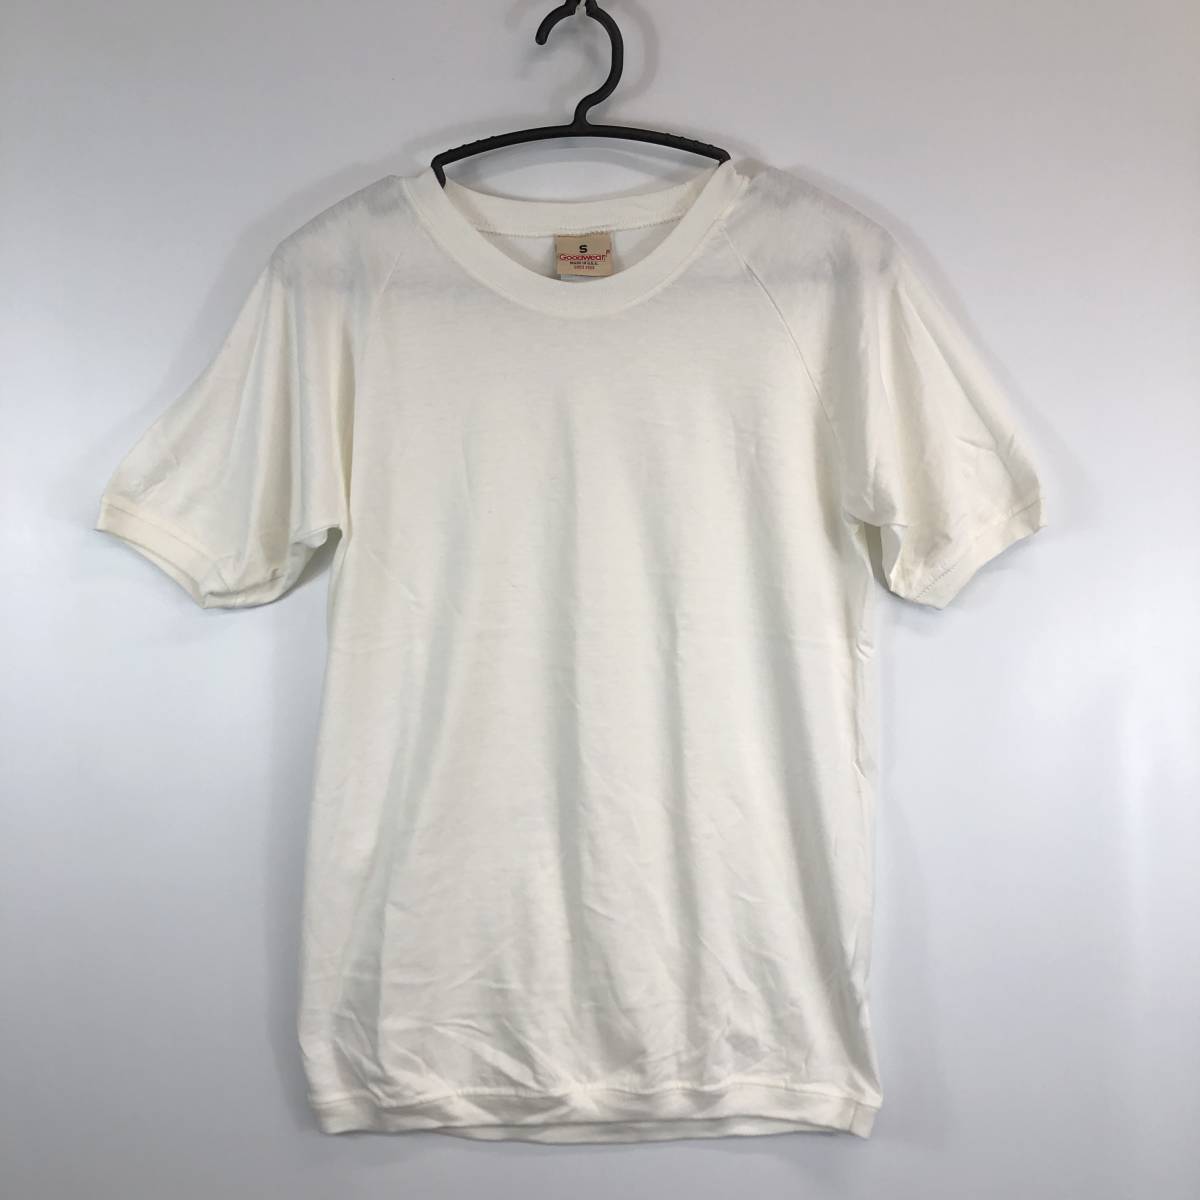 USA製 グッドウェア Goodwear 半袖Tシャツ ホワイト コットン 50% バンブー 50% Sサイズ②の画像1